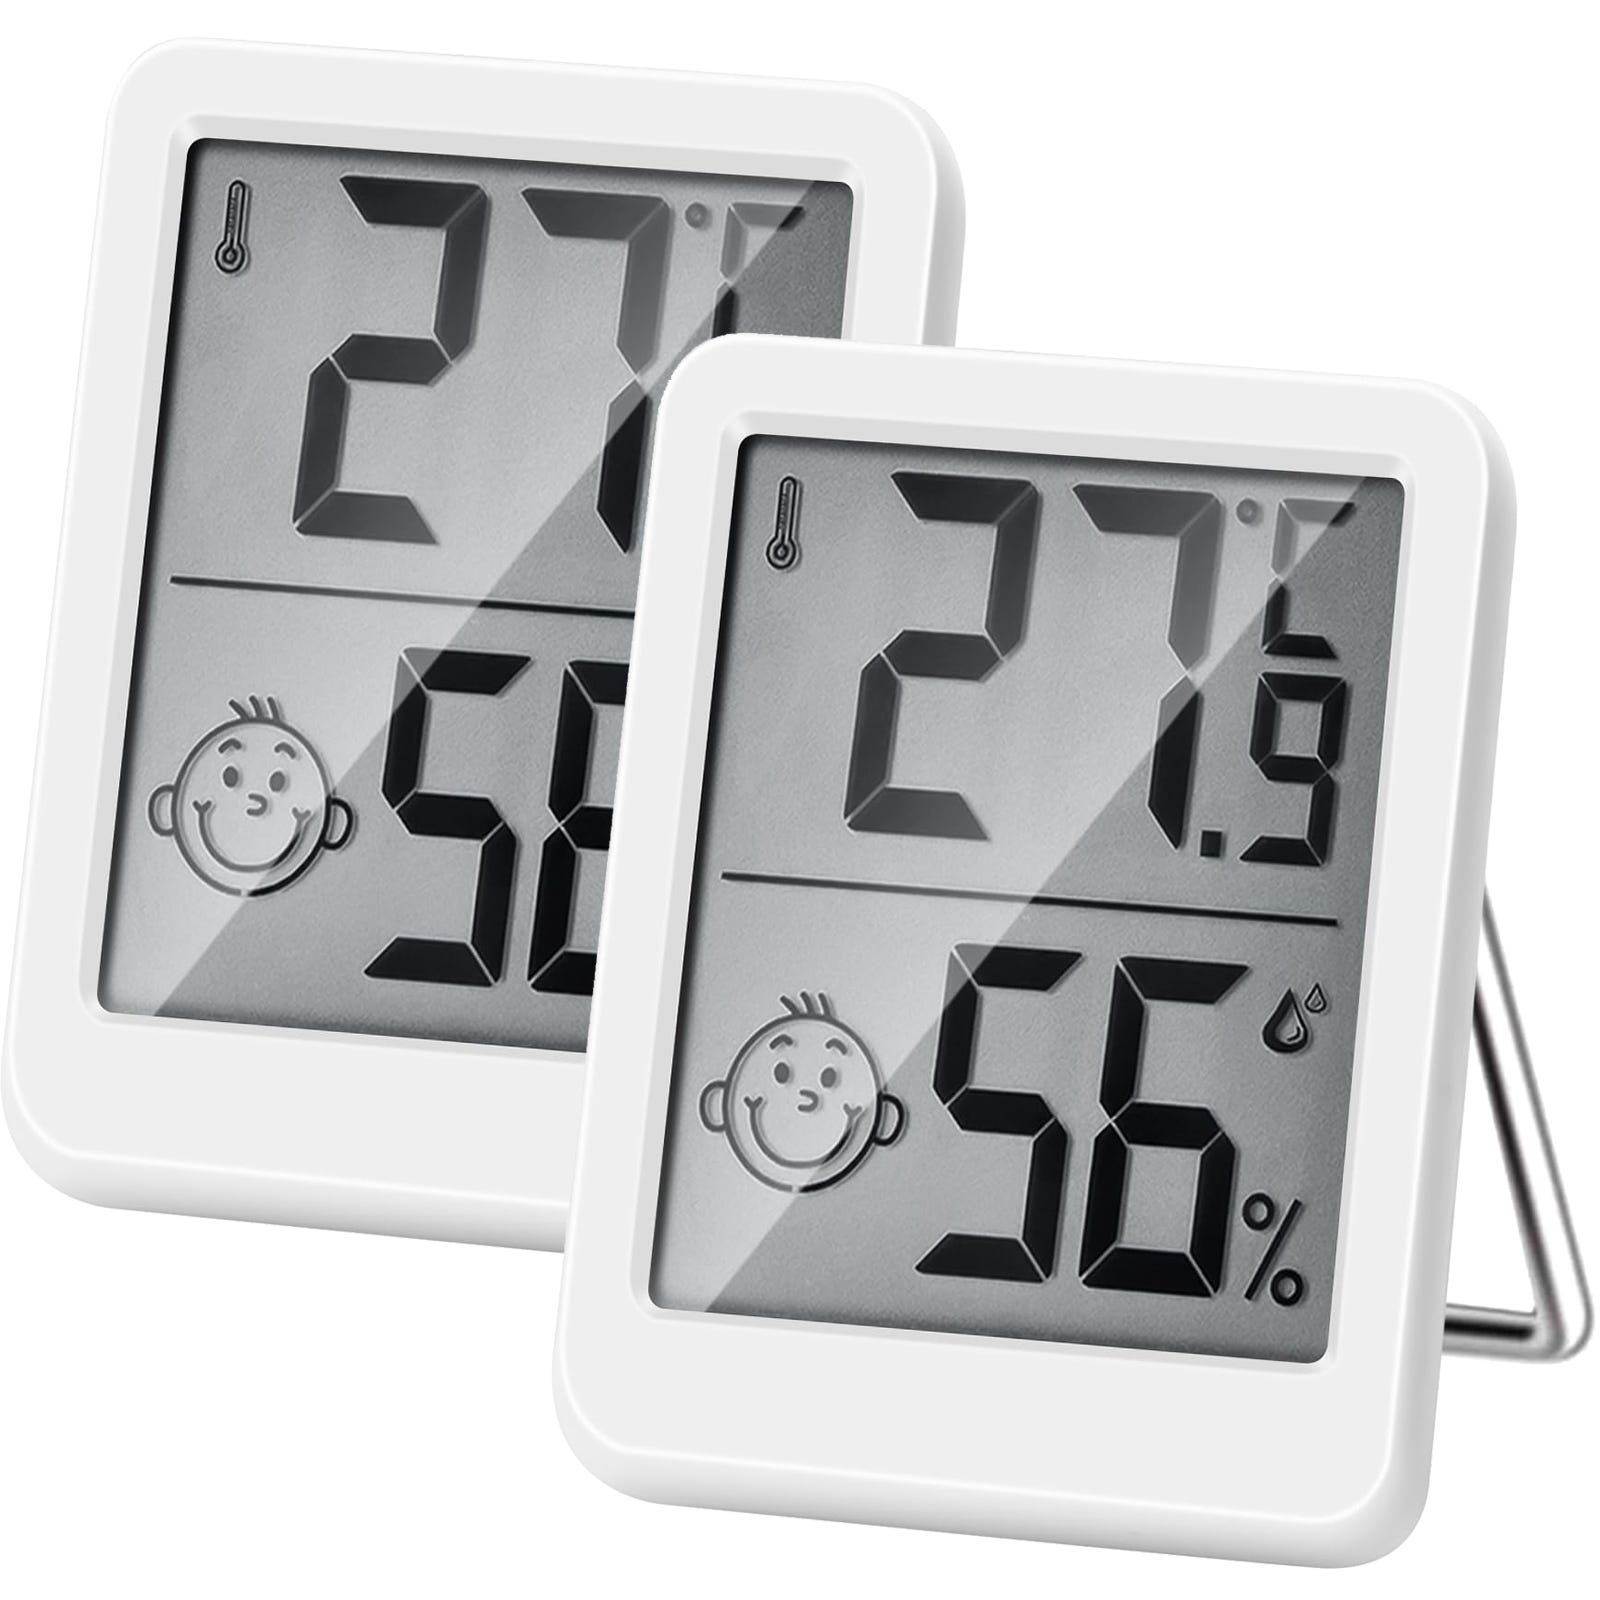 Thermomètre et hygromètre d'intérieur numérique de haute précision,  moniteur de température et d'humidité, indicateur thermo-hygromètre (2  pièces)